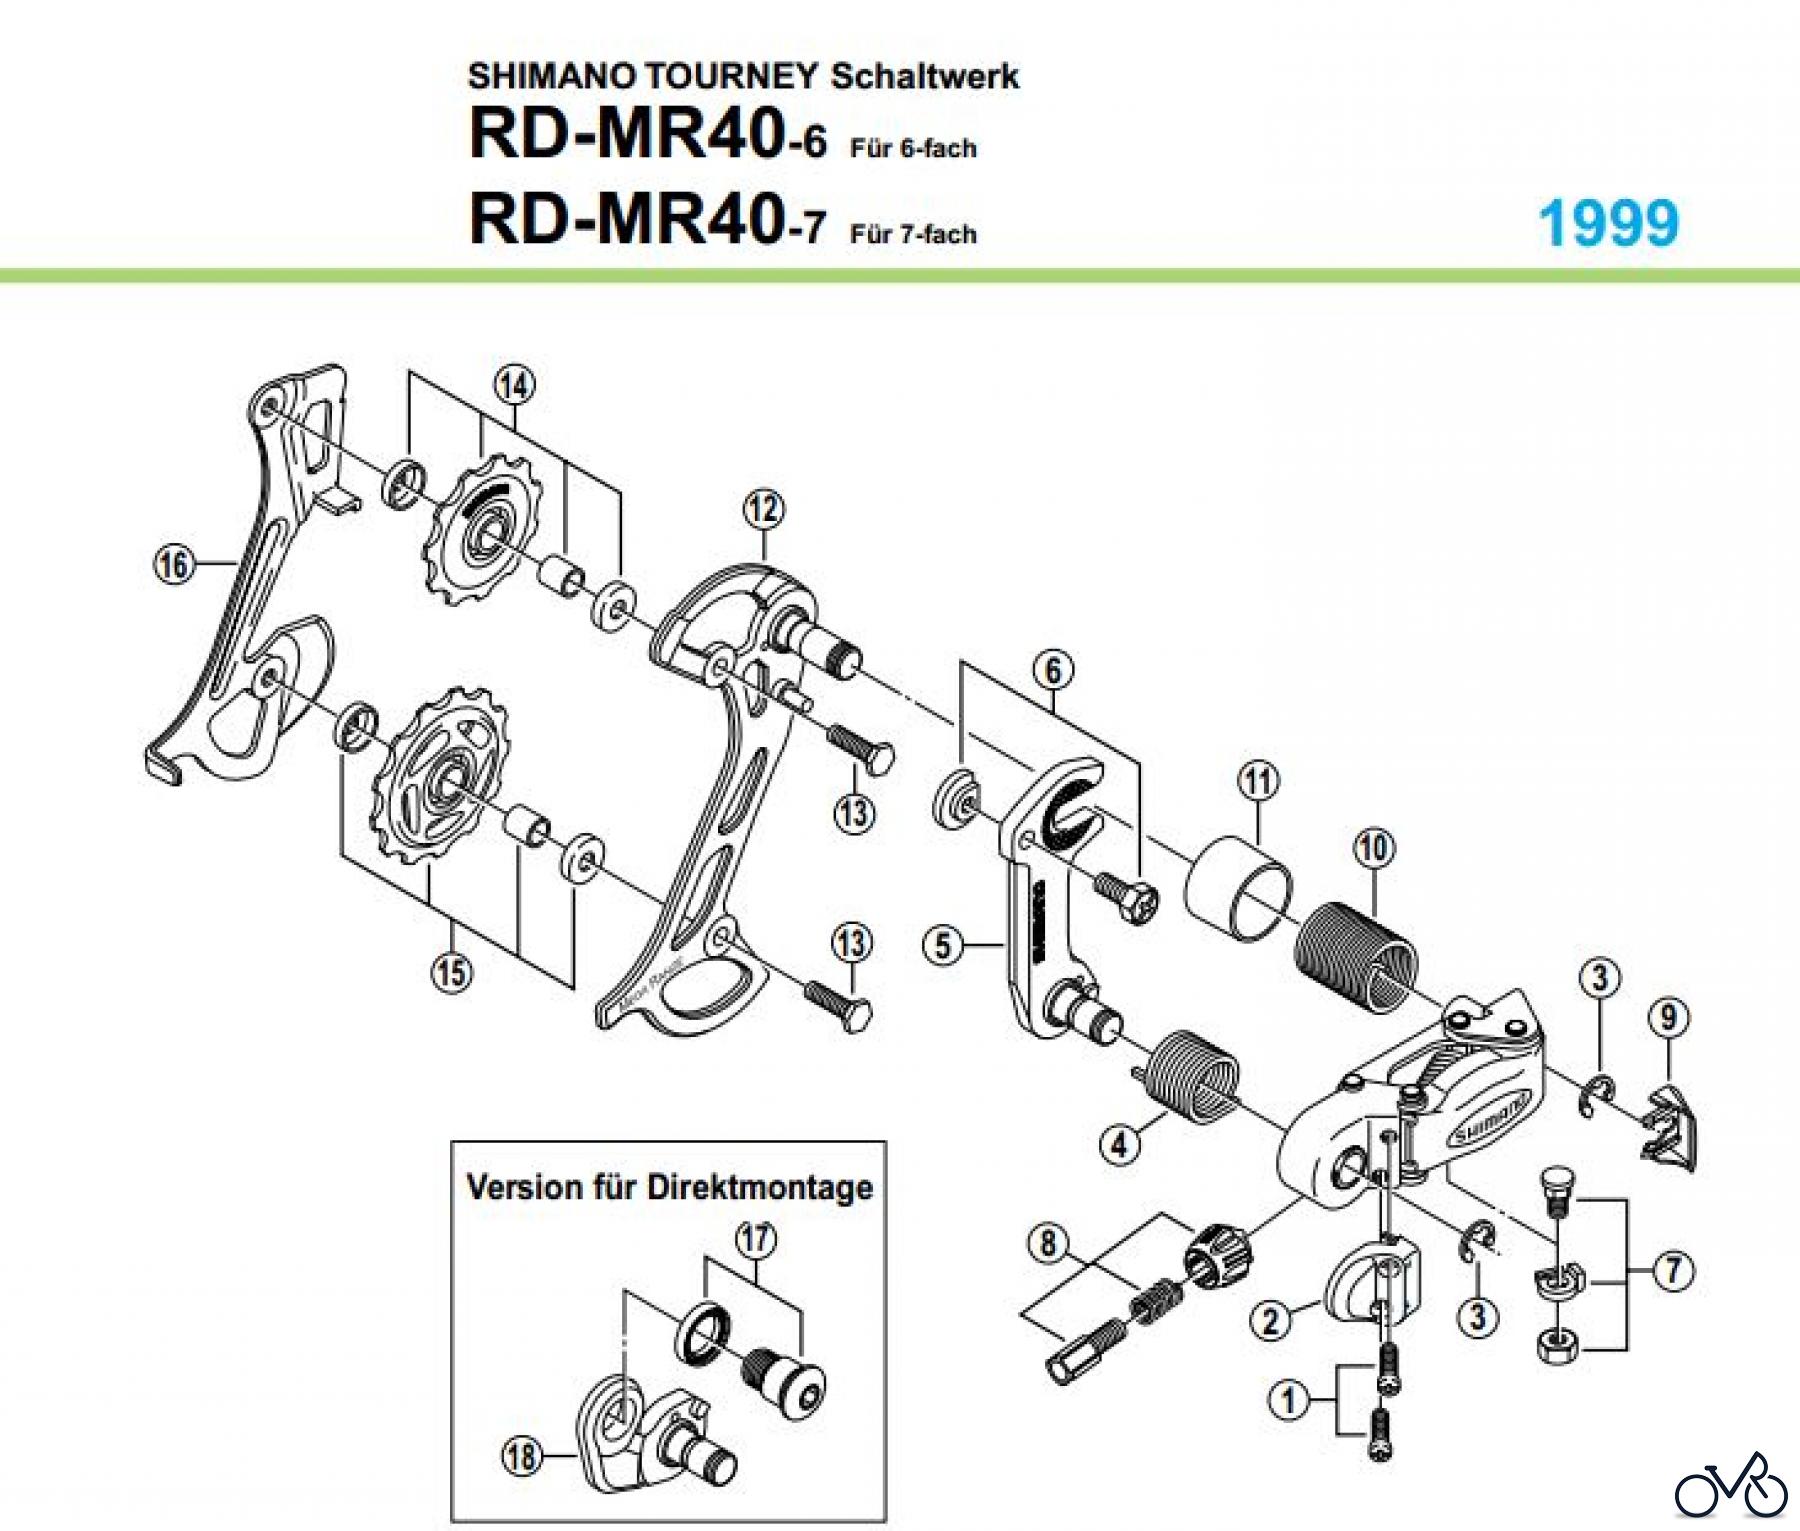  Shimano RD Rear Derailleur - Schaltwerk RD-MR40-99